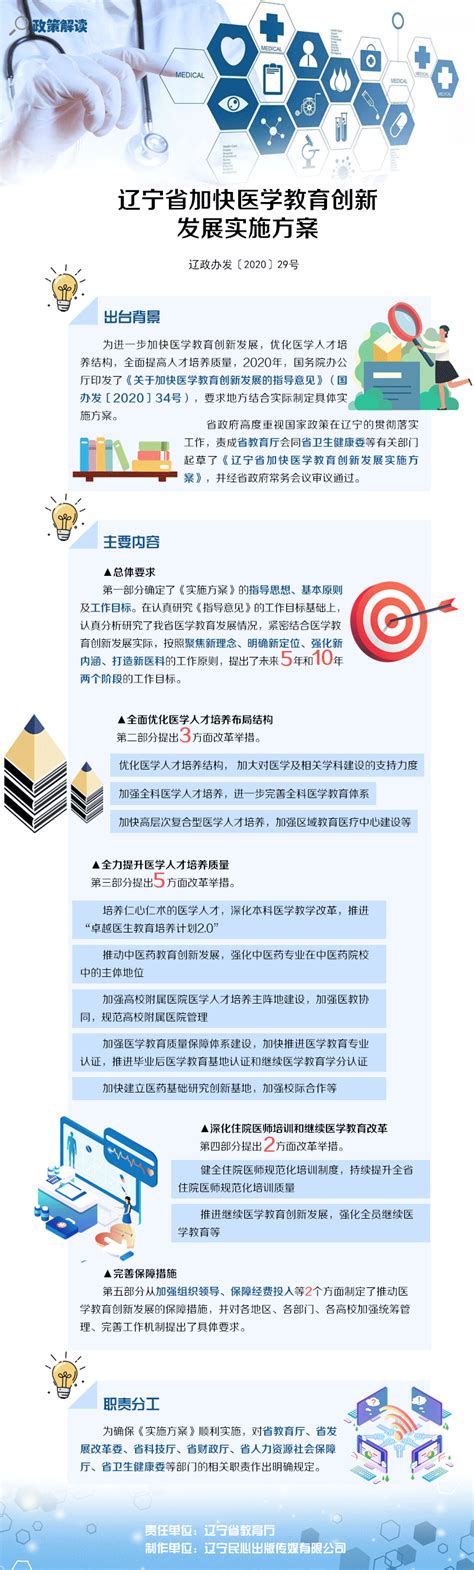 2015年辽宁省政府机关遴选公务员资格审查公告